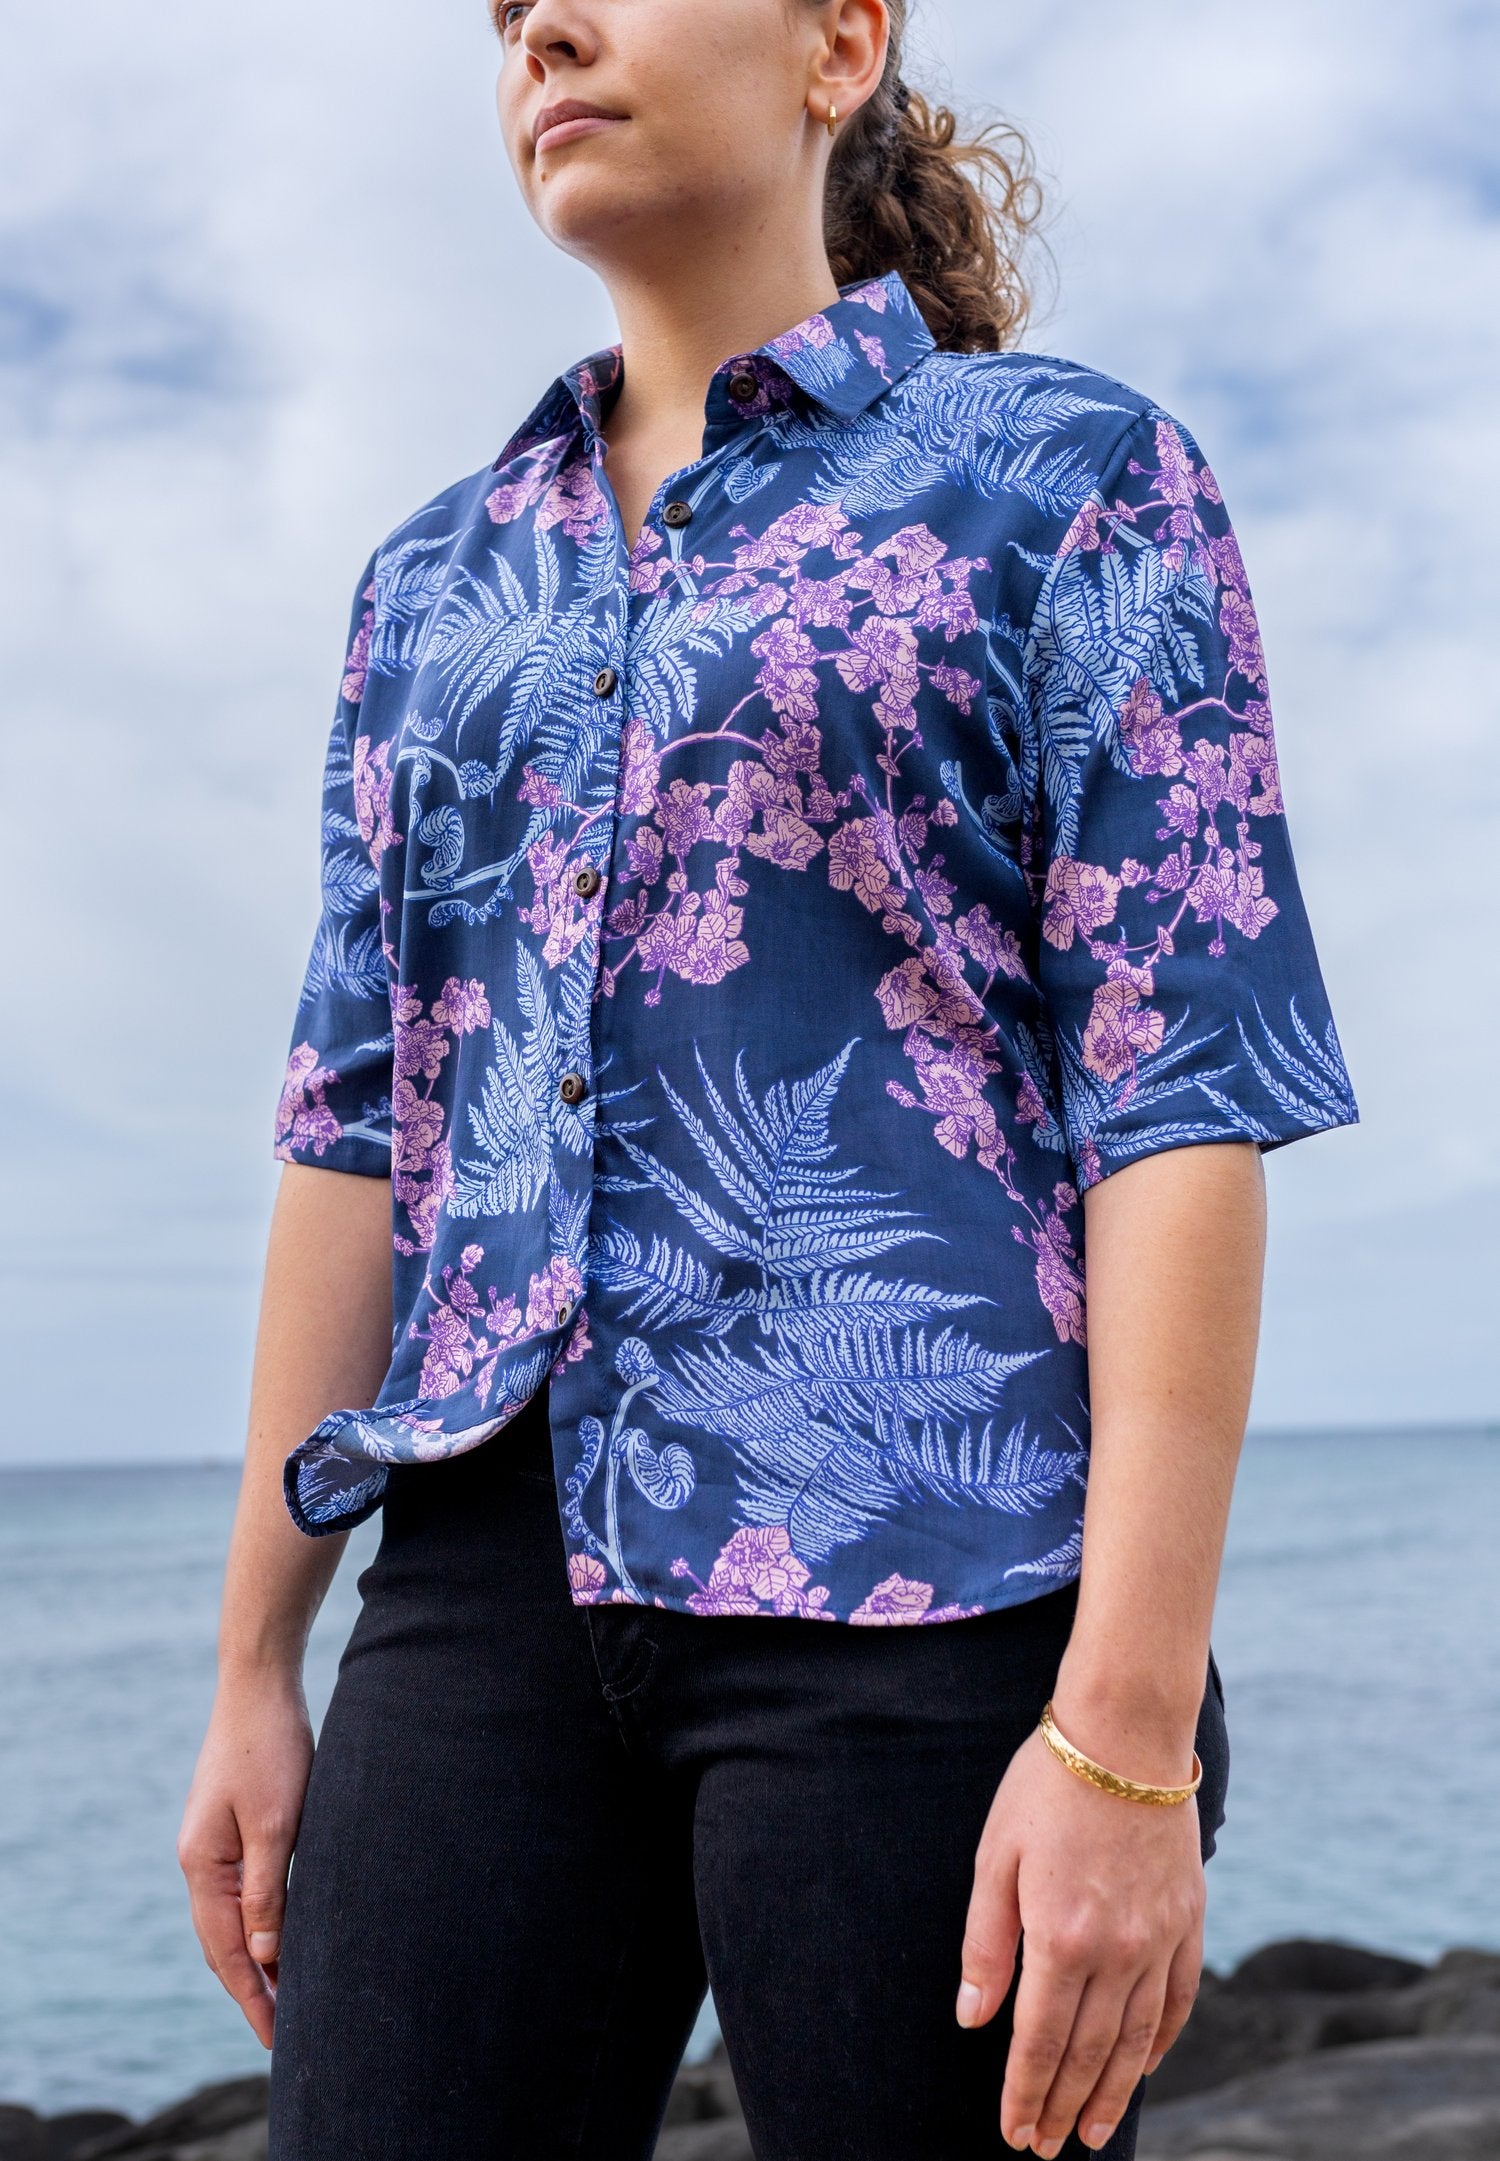 Pop-Up Mākeke - David Shepard Hawaii - Hāpuʻu 'Ilima Blue Women's Half Sleeve Aloha Shirt